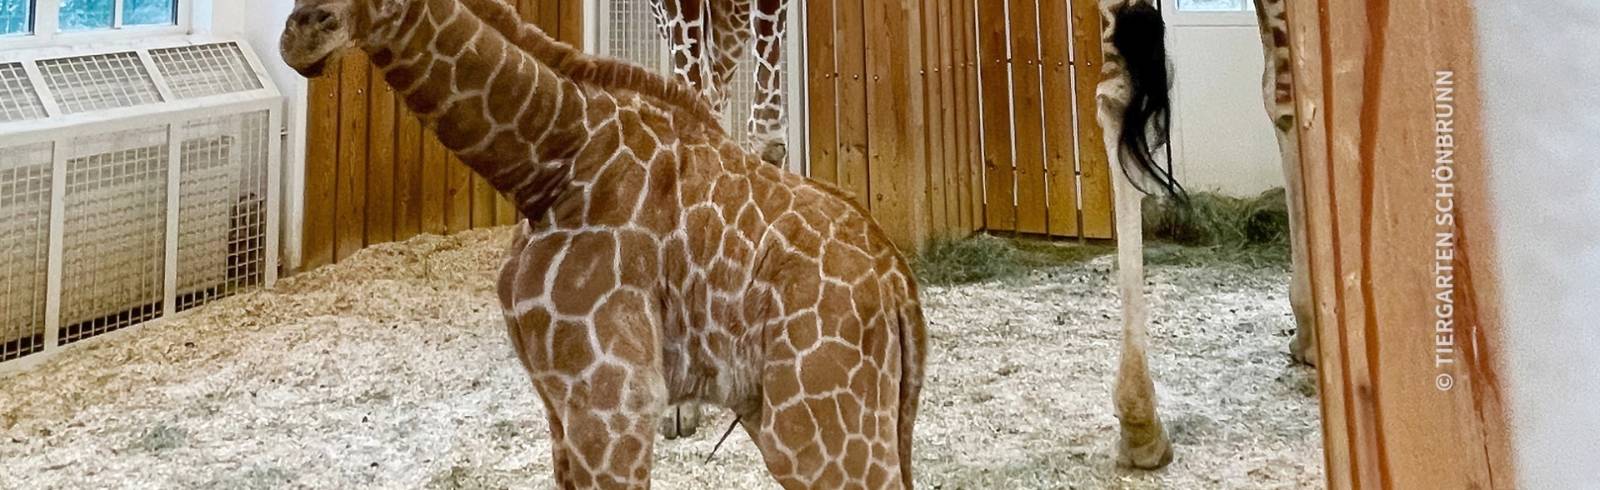 Giraffen-Mädchen "noch nicht ganz stabil"